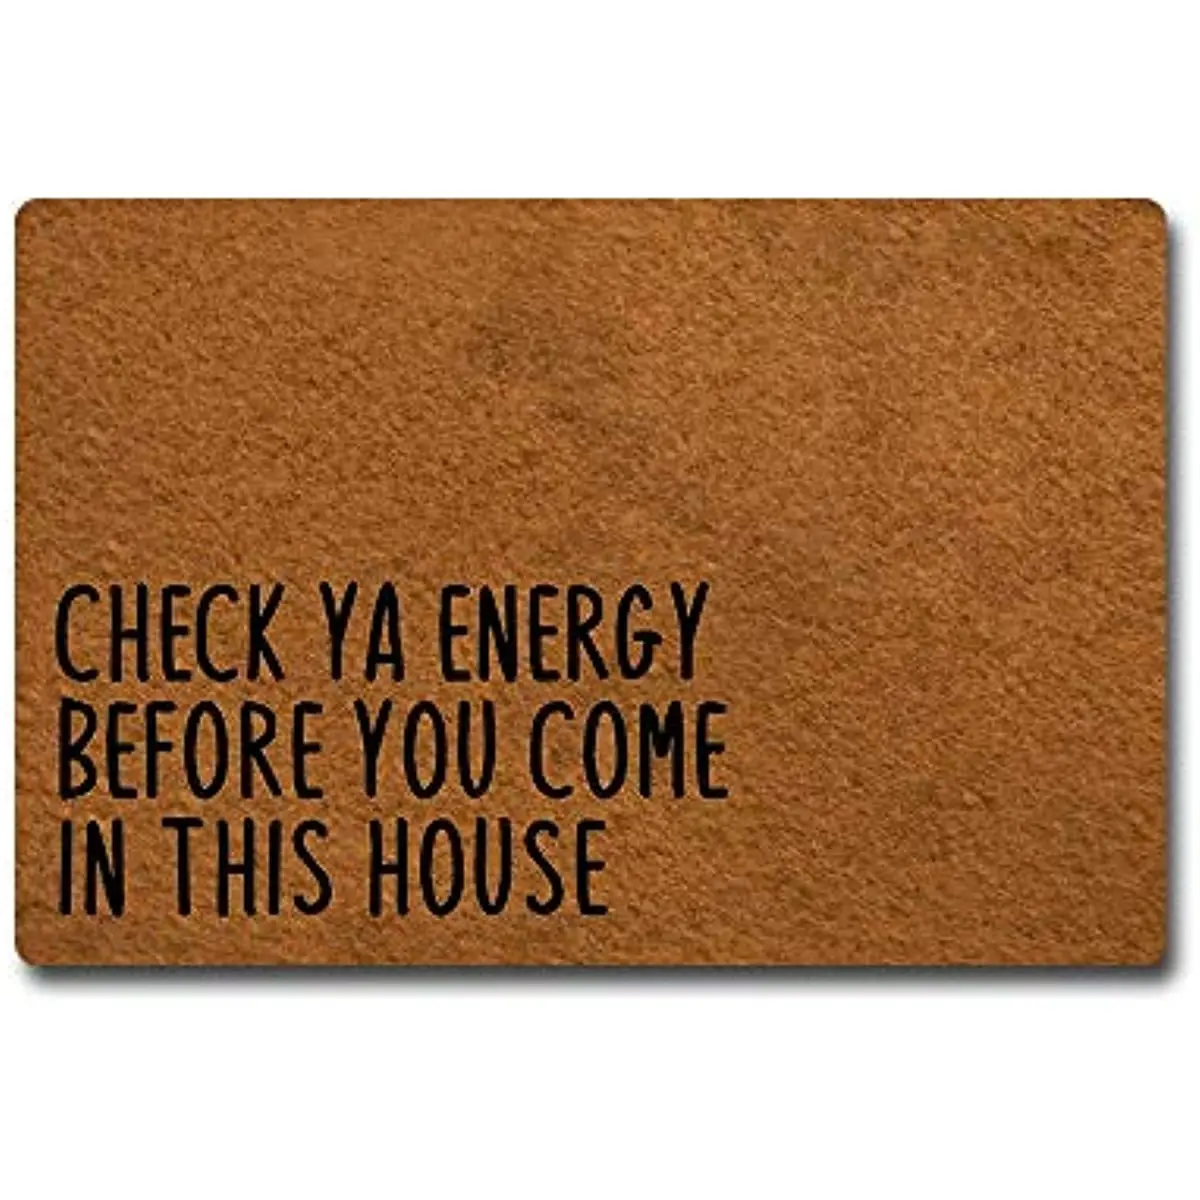 

Check Ya Energy Before You Come in This House Doormat Entrance Floor Mat Funny Doormat Door Decorative Indoor Outdoor Rug Carpet